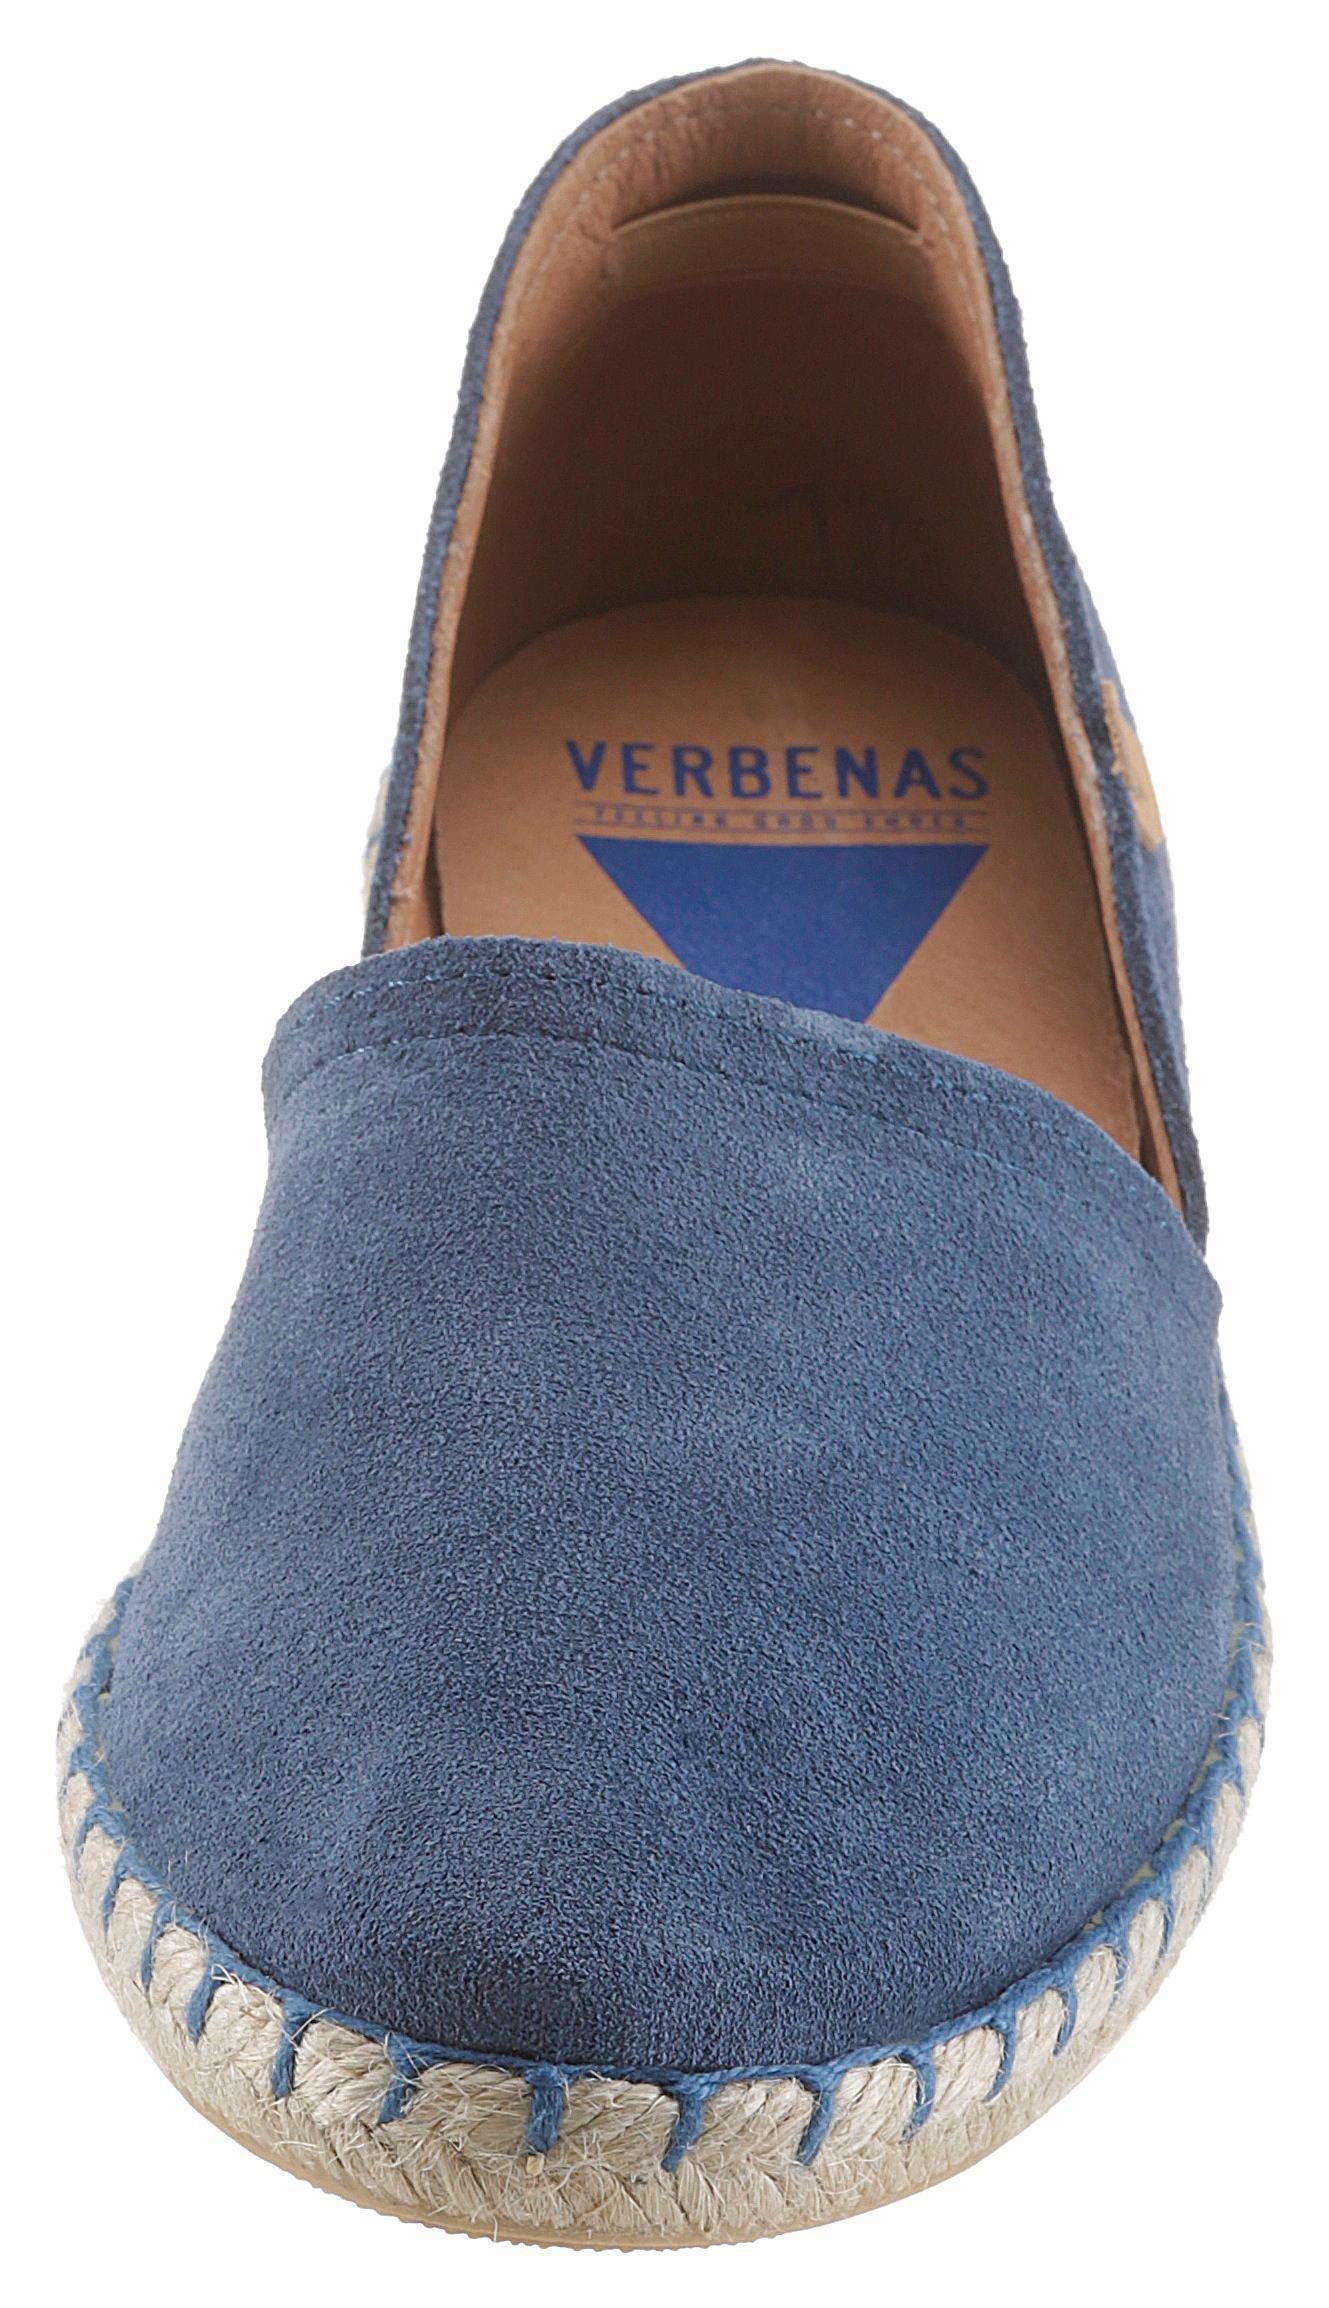 VERBENAS Espadrille mit Jute-Rahmen jeansblau typischem